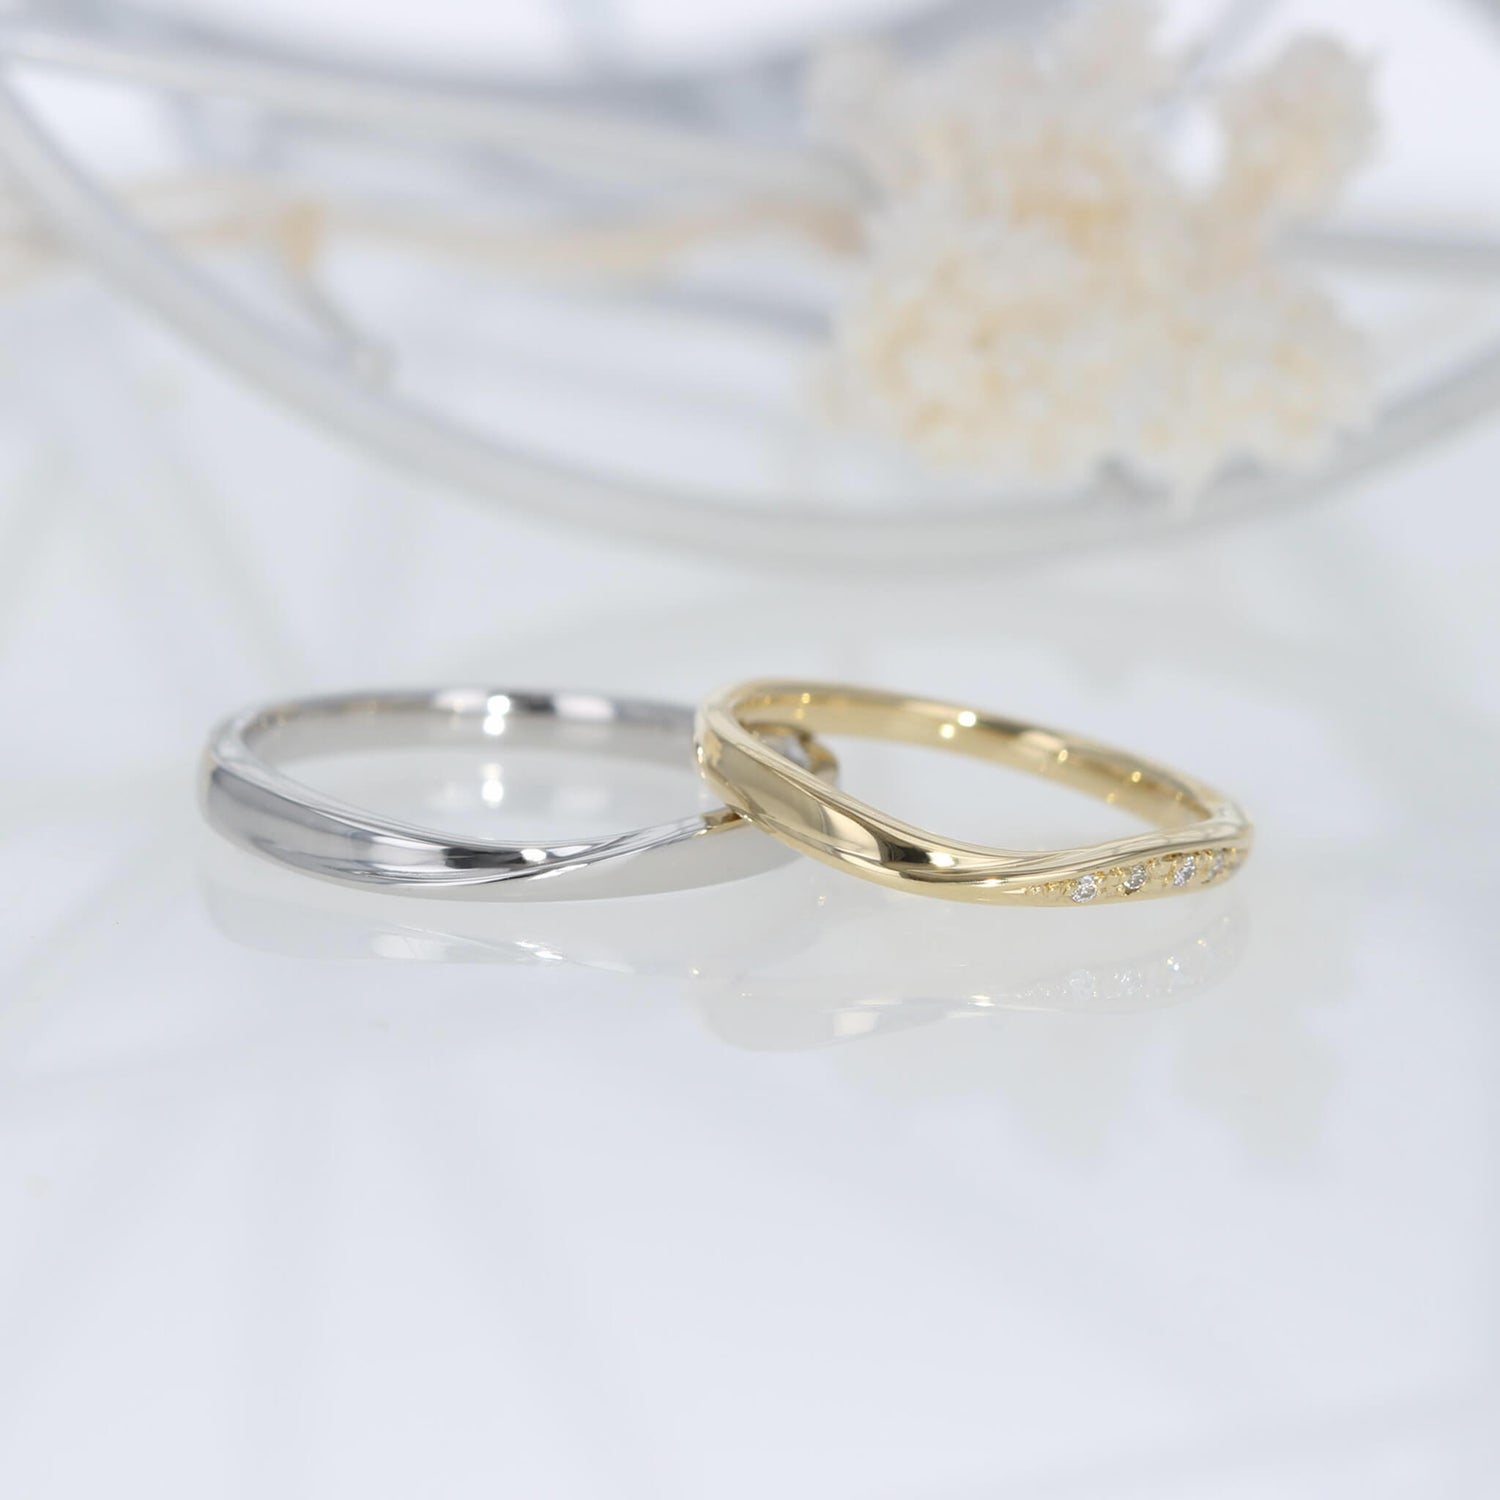 結婚指輪 マリッジリング プラチナ 18金 イエローゴールド メレダイヤ